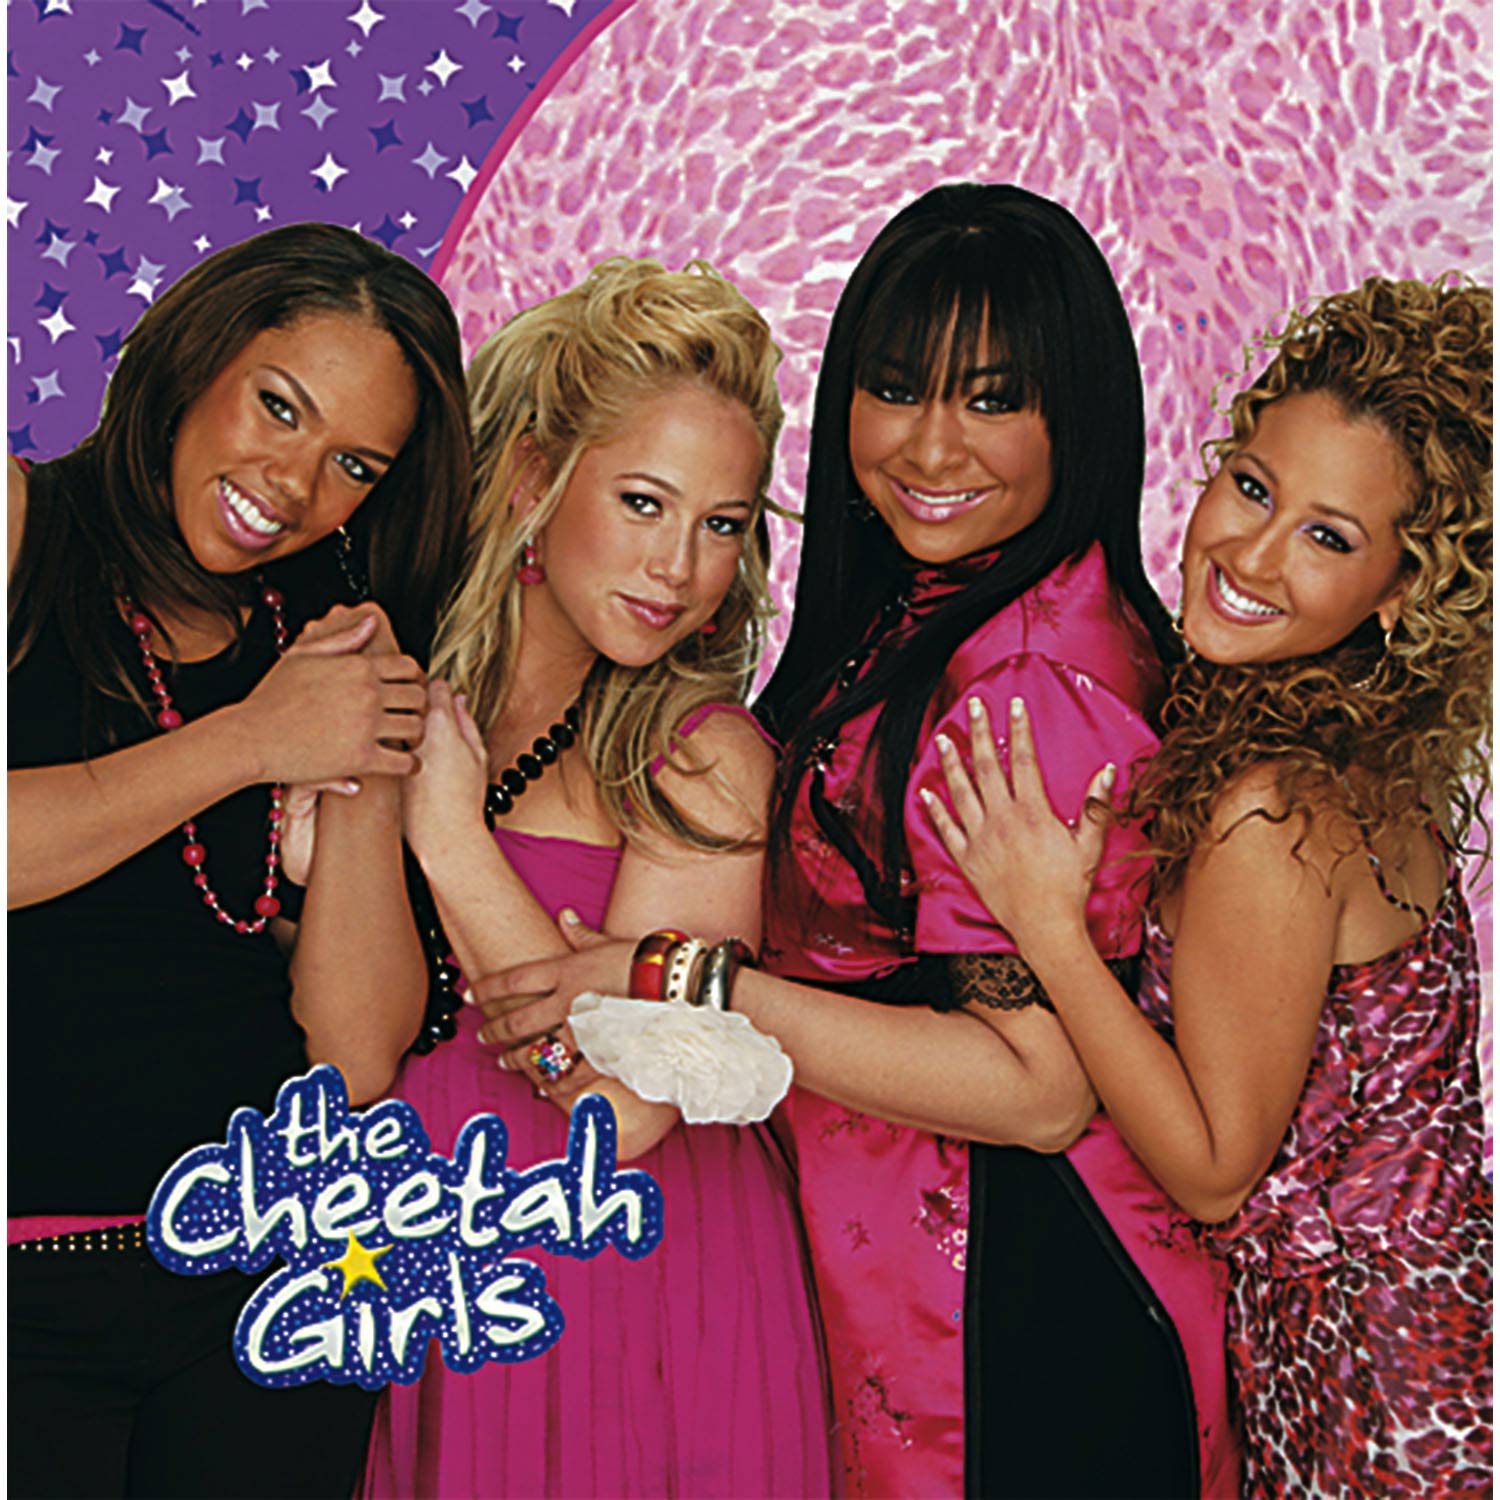 Cheetah Girls the cheetah girls 626536 1500 1500jpg